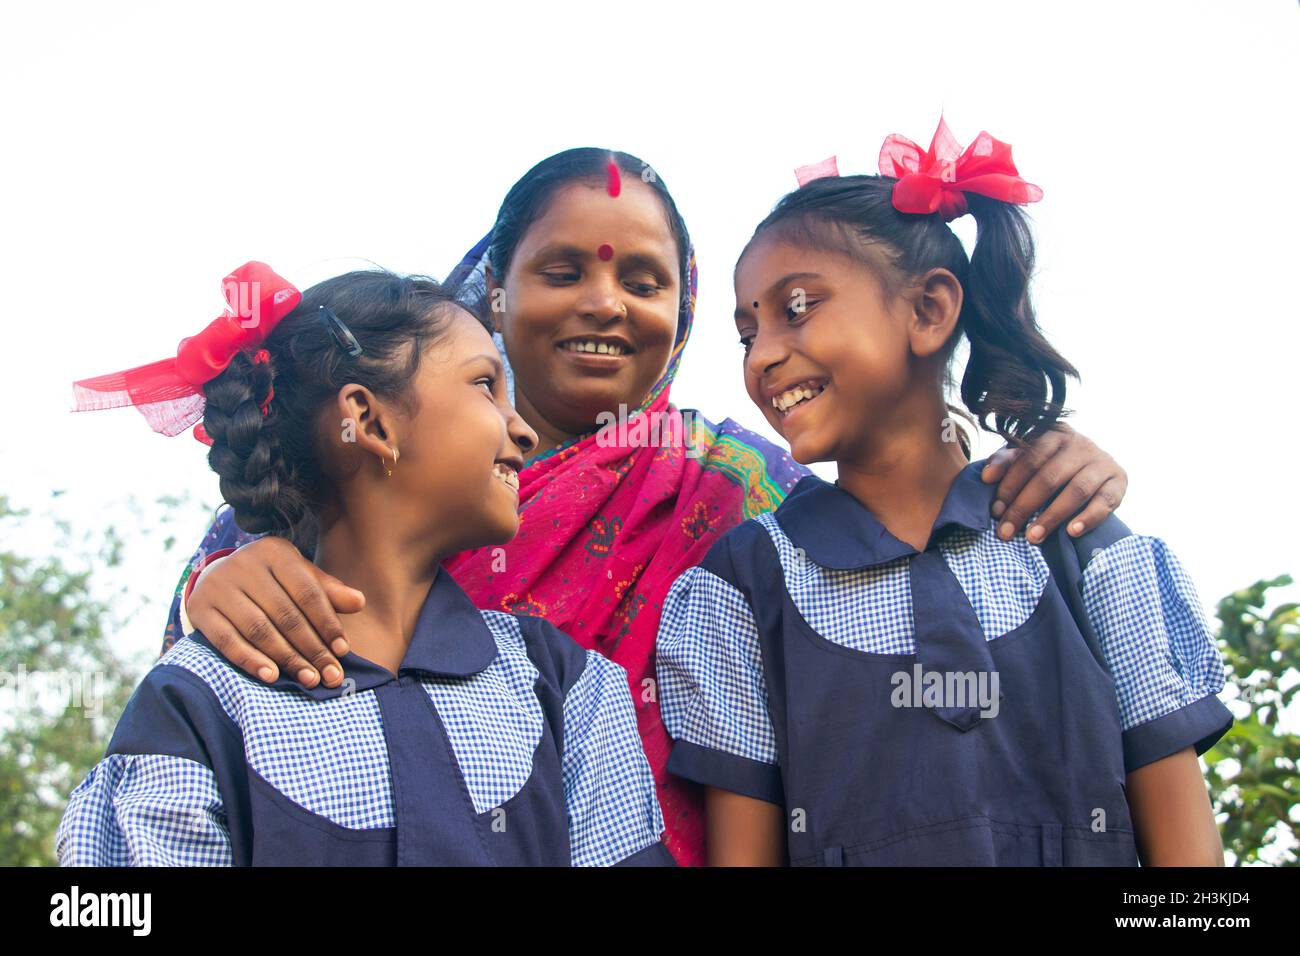 Indian schoolgirls in school uniform in outdoor Stock Photo - Alamy